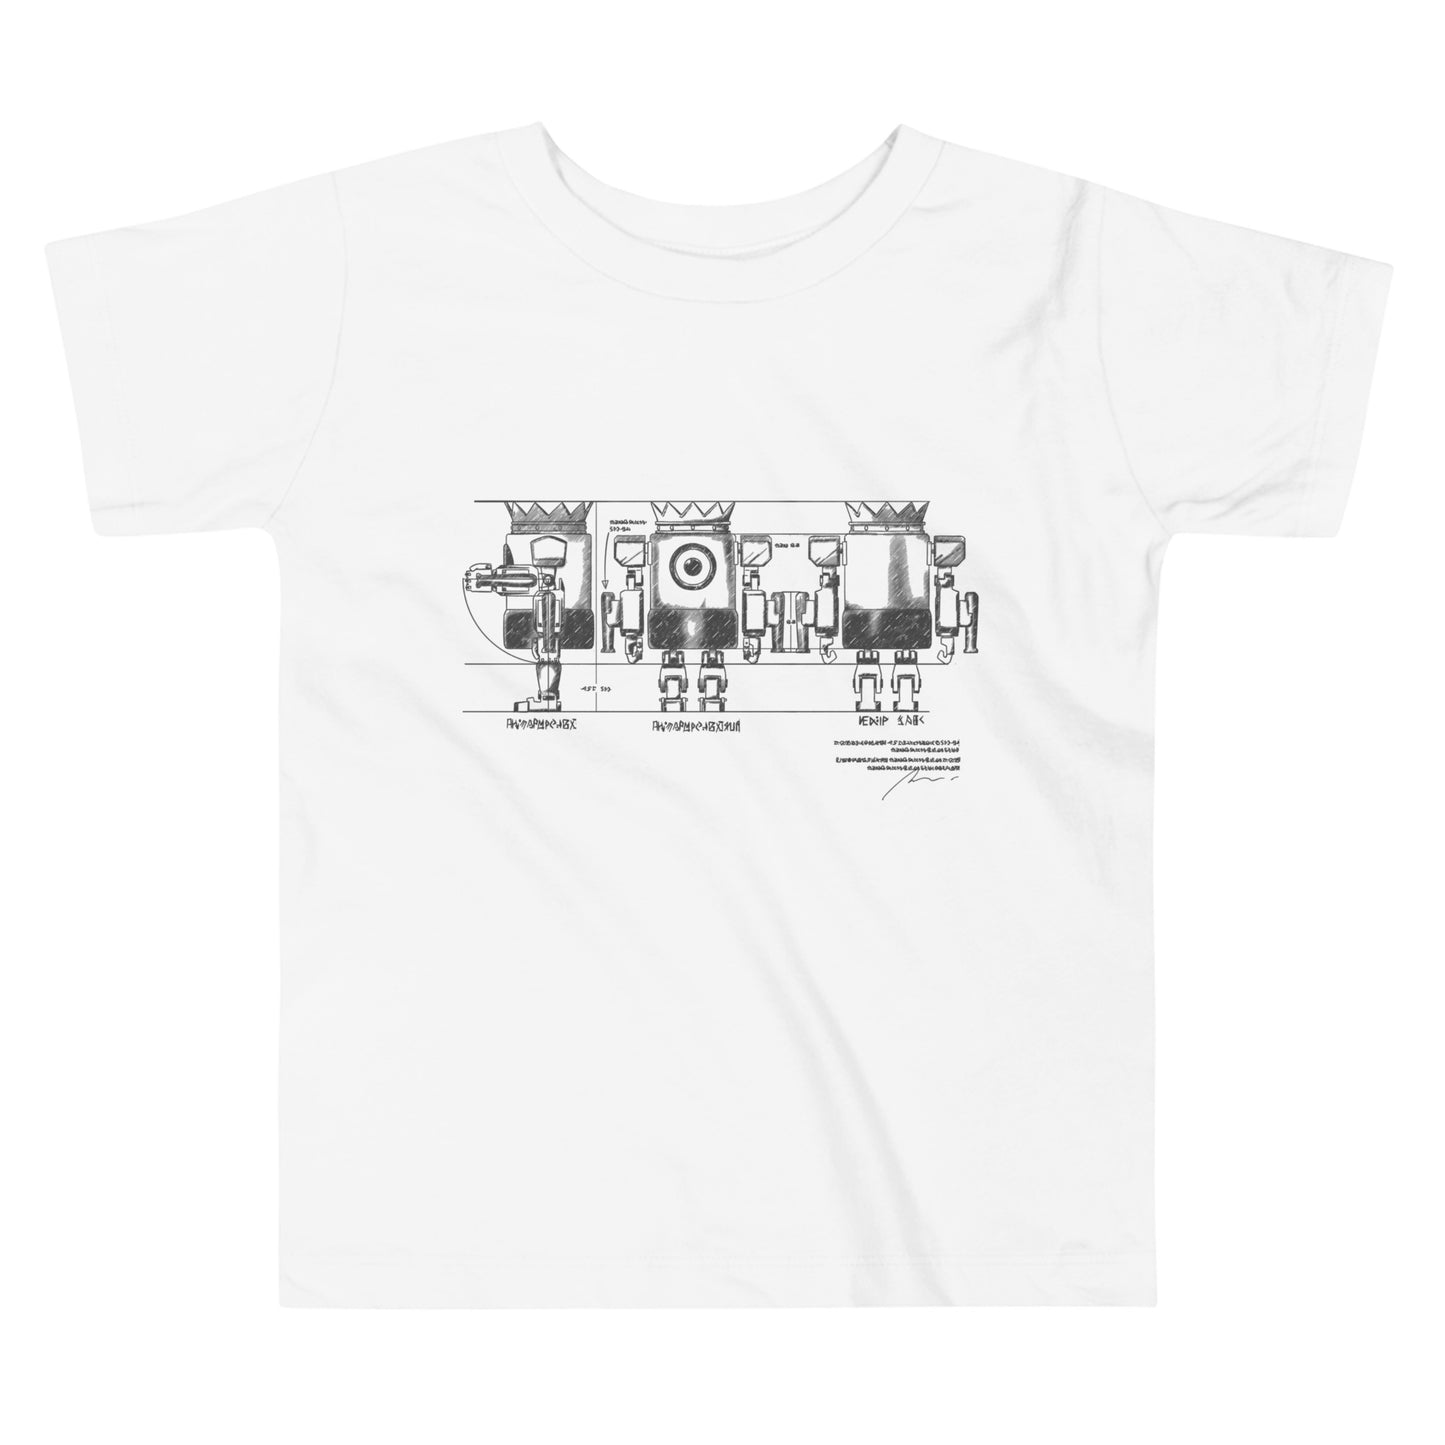 【キッズ】XOBOT KING設計図 Tシャツ